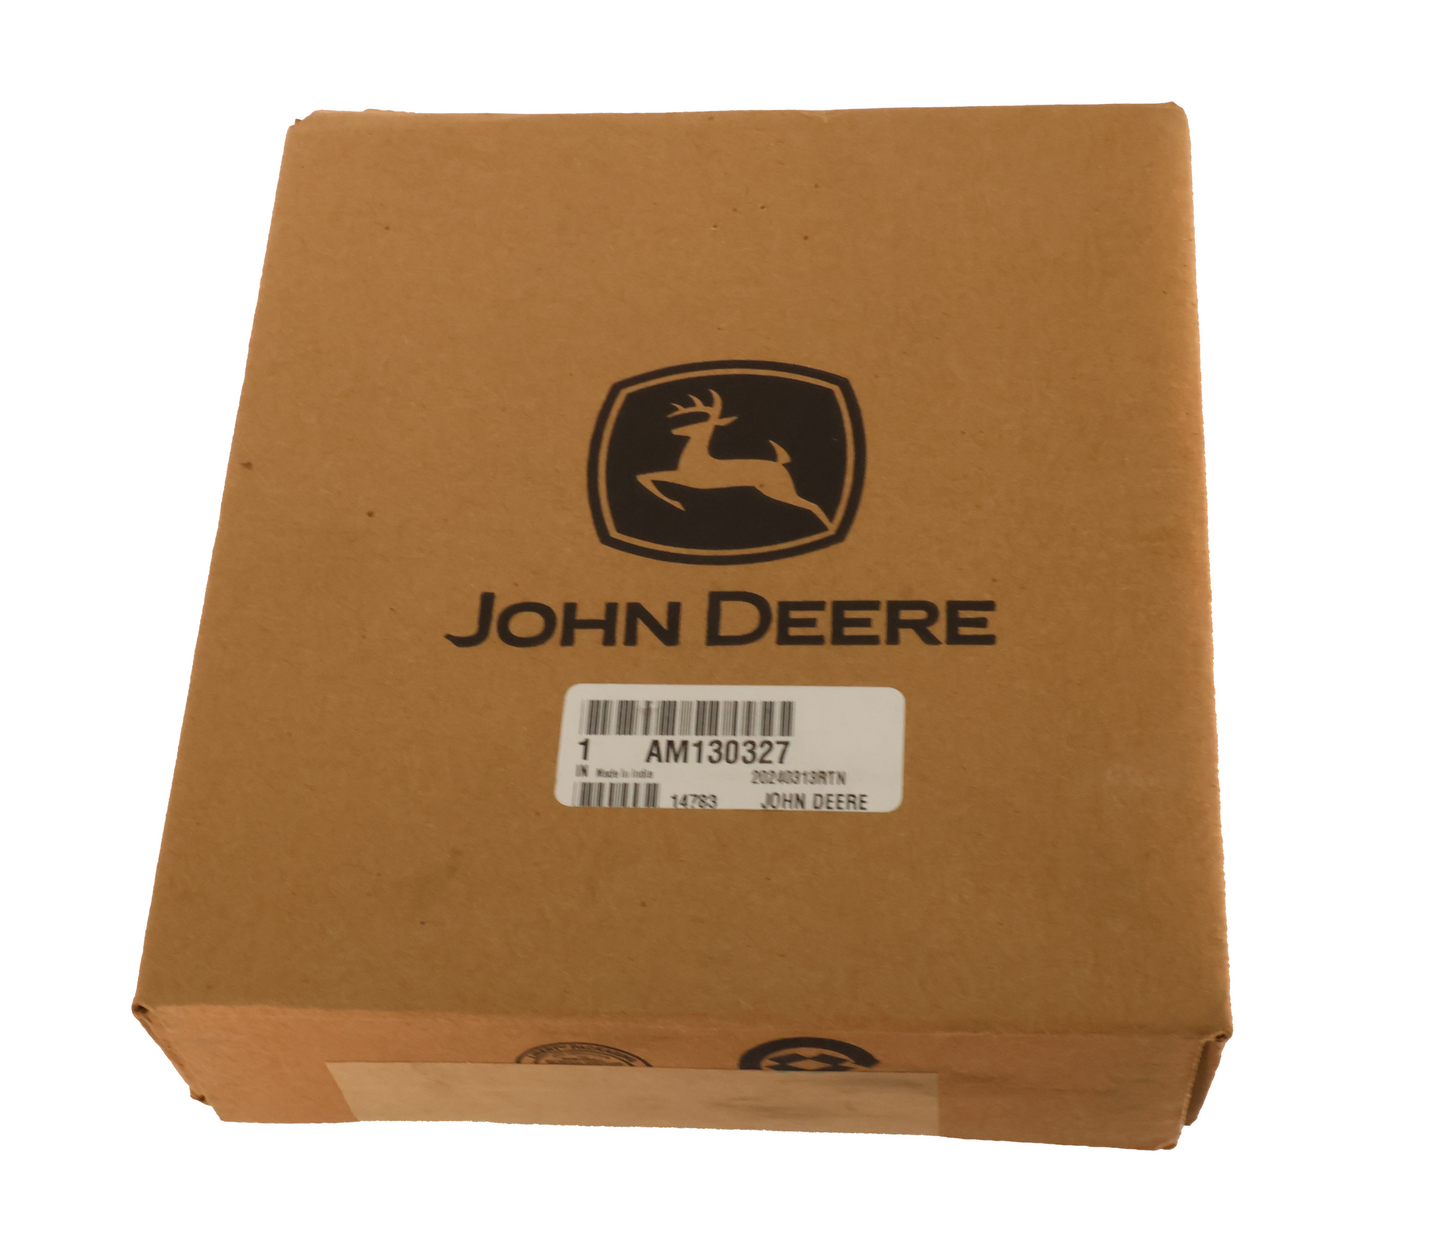 John Deere Original Equipment Idler - AM130327